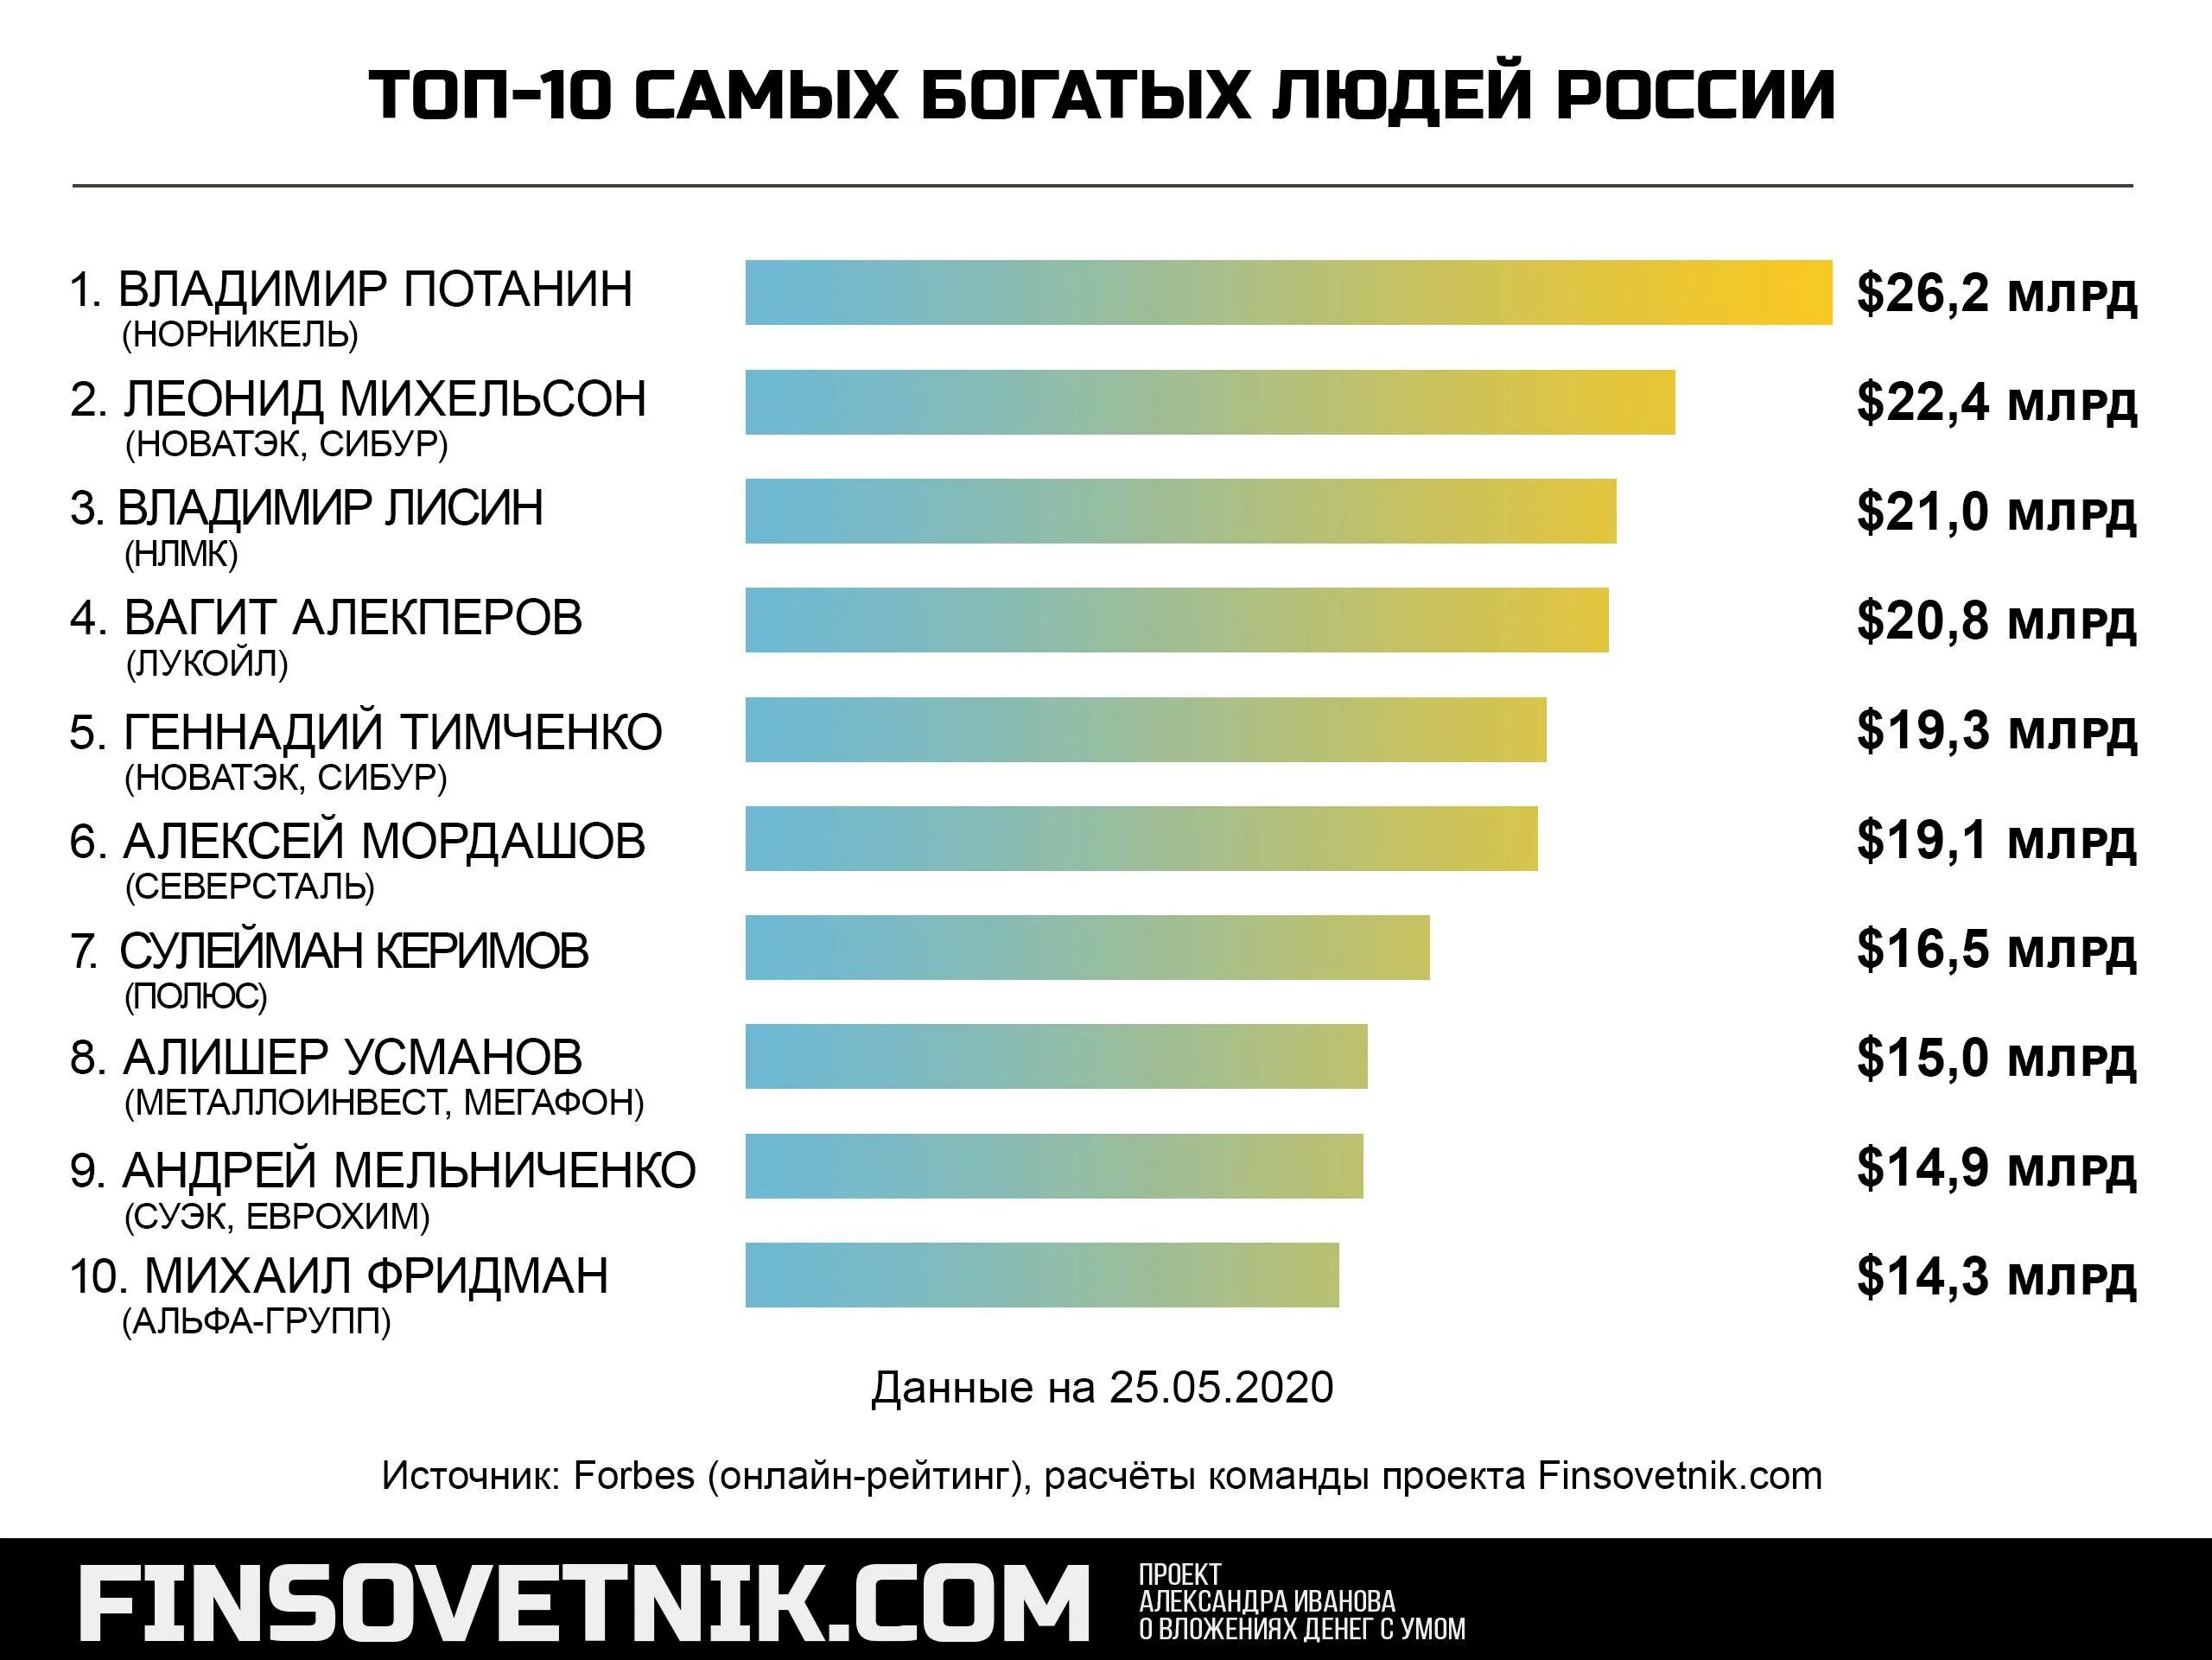 Сколько долларов миллиардеров в россии. Топ 10 самых богатых людей. Состояние самого богатого человека. Топ 10 российских миллиардеров. Топ 10 богатых людей.